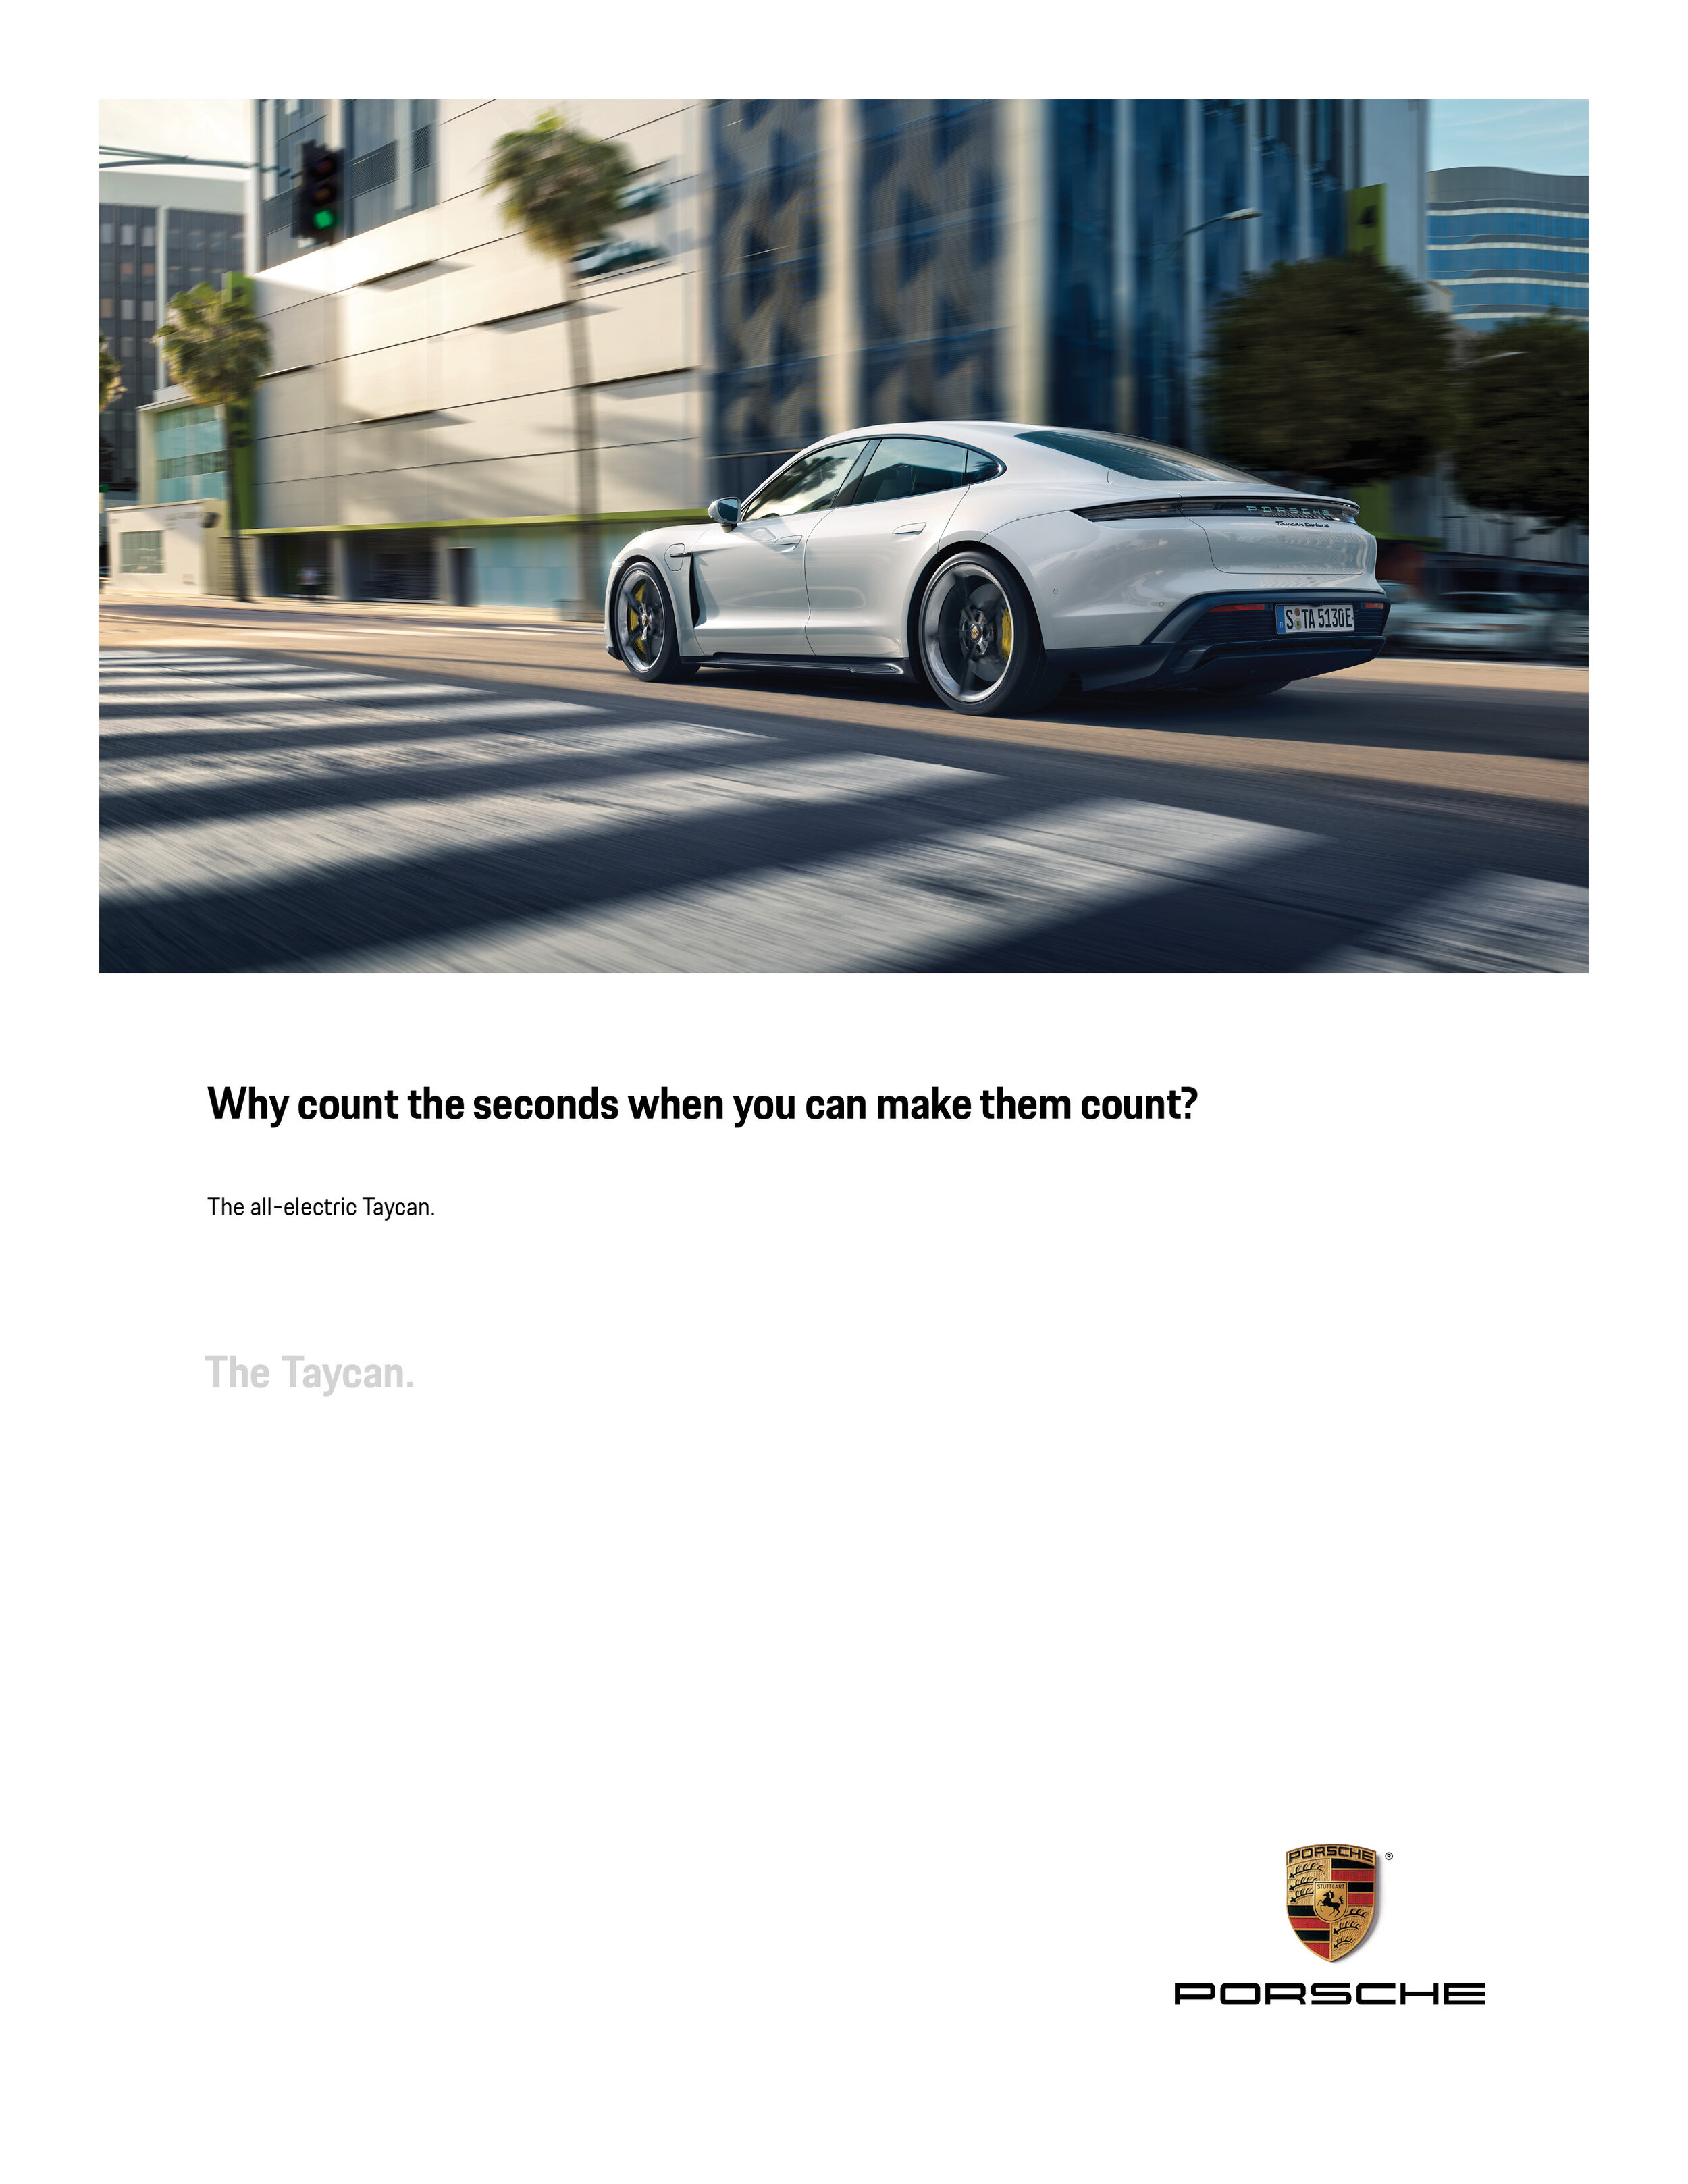 Porsche-Print10.jpg